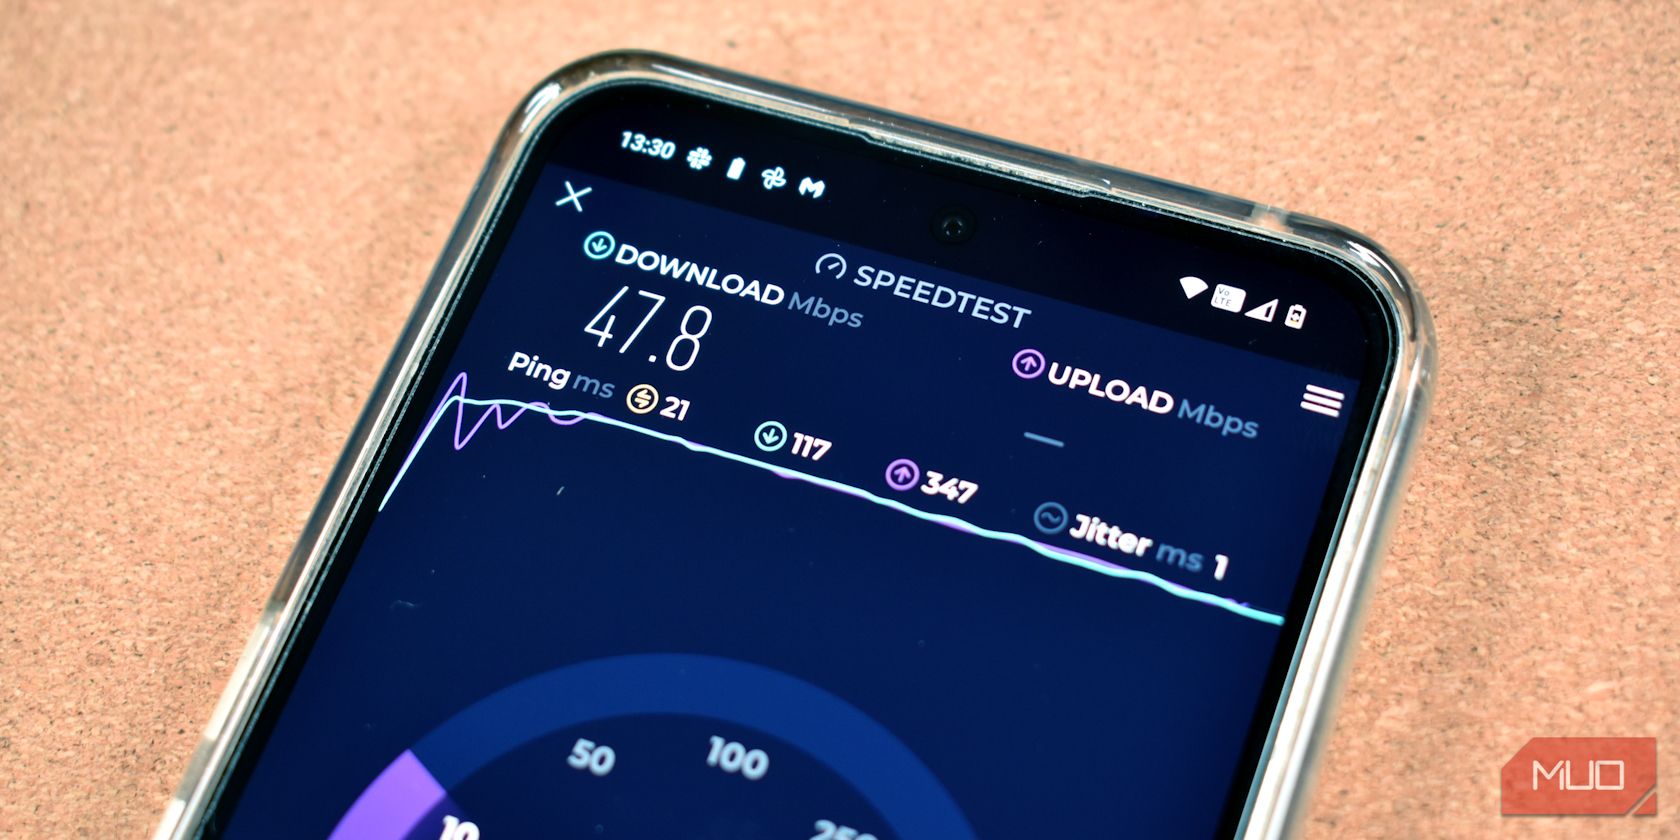 ookla speedtest app on smartphone screen feature